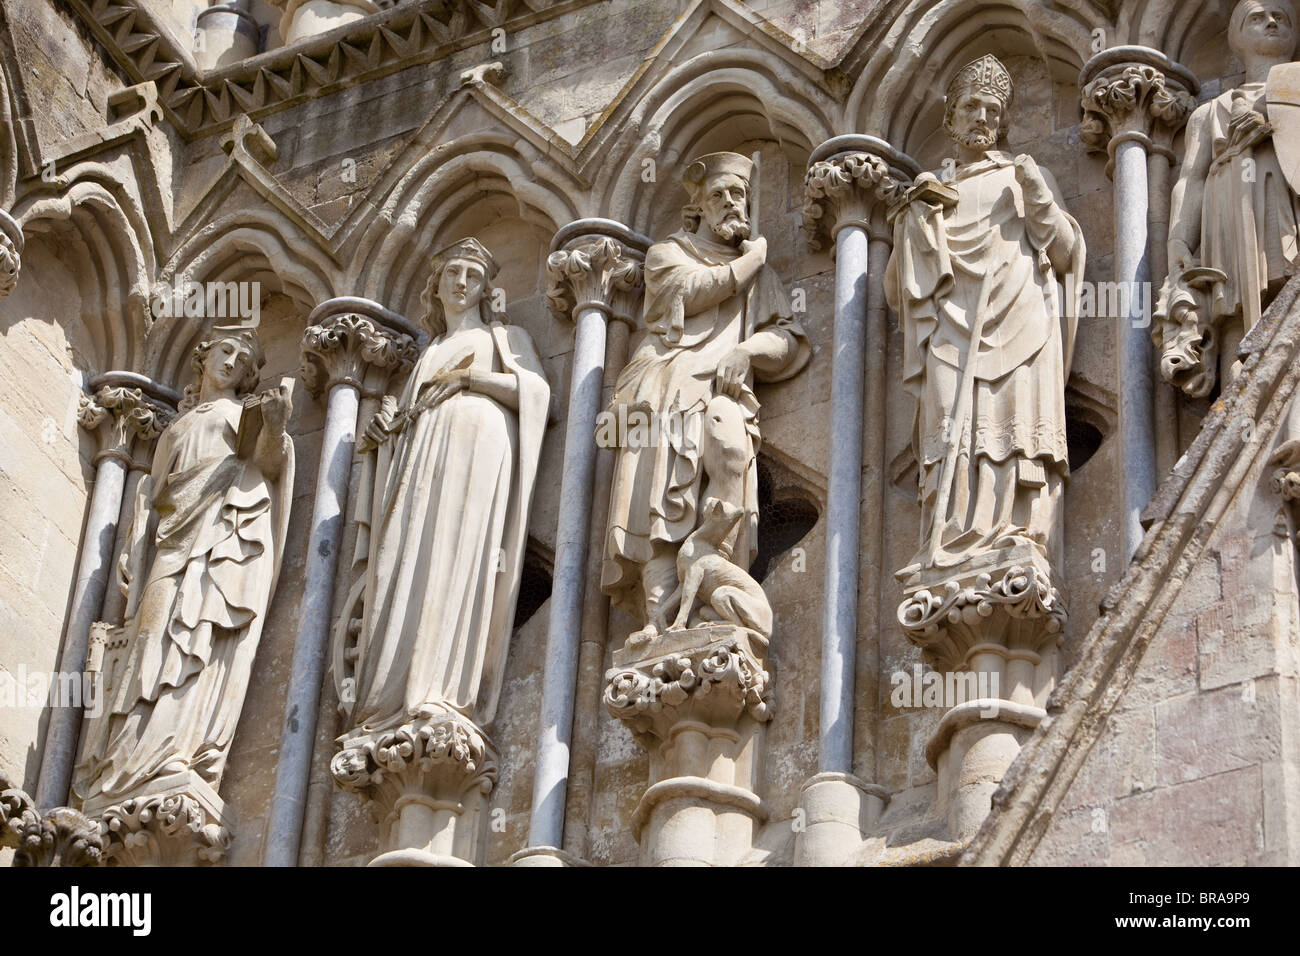 Cathédrale de Salisbury Angleterre du Wiltshire les statues montrent des dessins de vêtements du milieu du 12th siècle quand la cathédrale a été construite. Banque D'Images